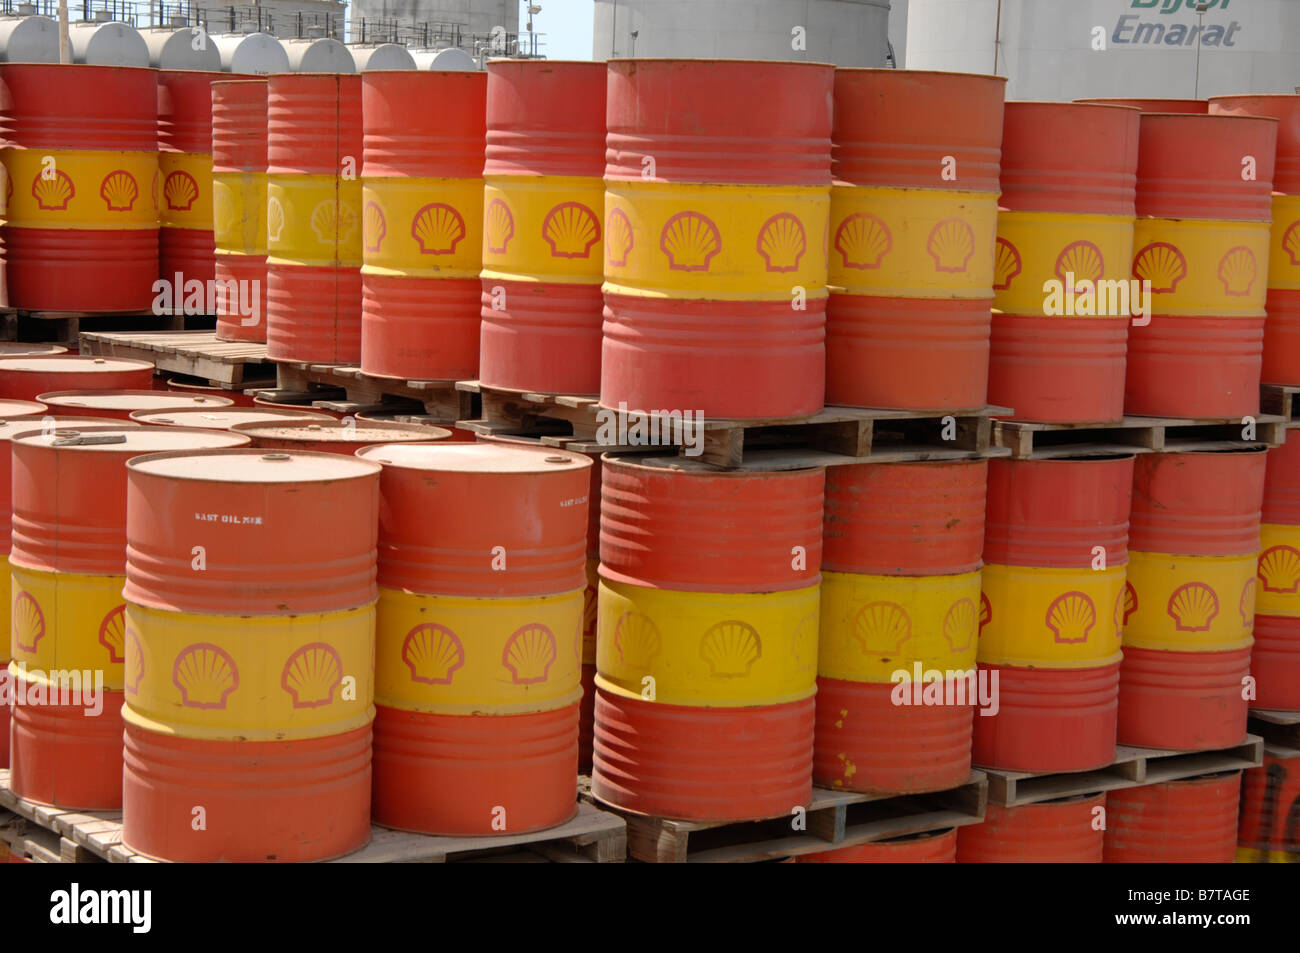 Ölfässer gestapelt zusammen mit der Shell Oil Company branding Stockfoto